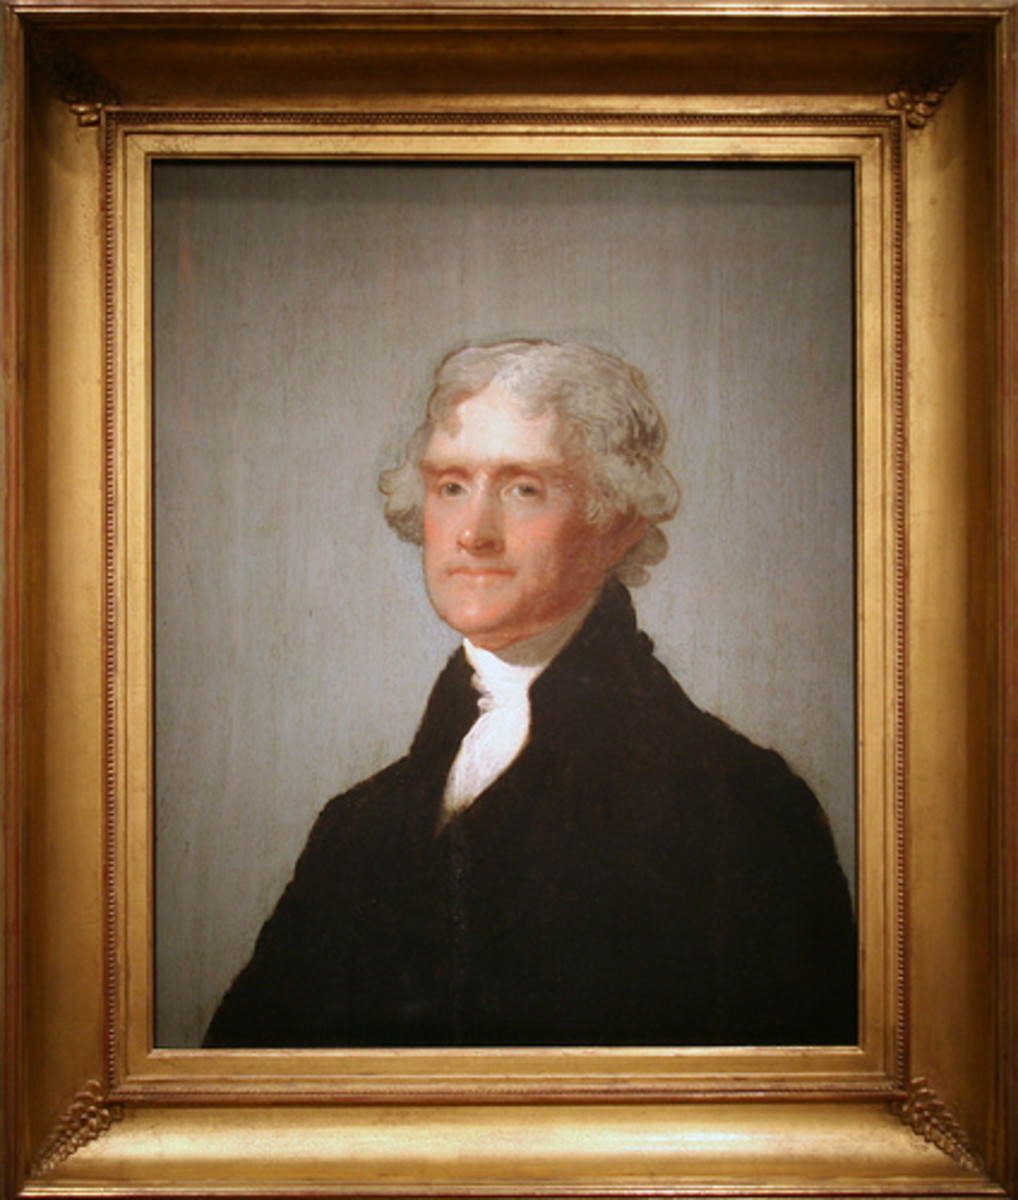 Thomas Jefferson (April 13, 1743 - July 4, 1826)